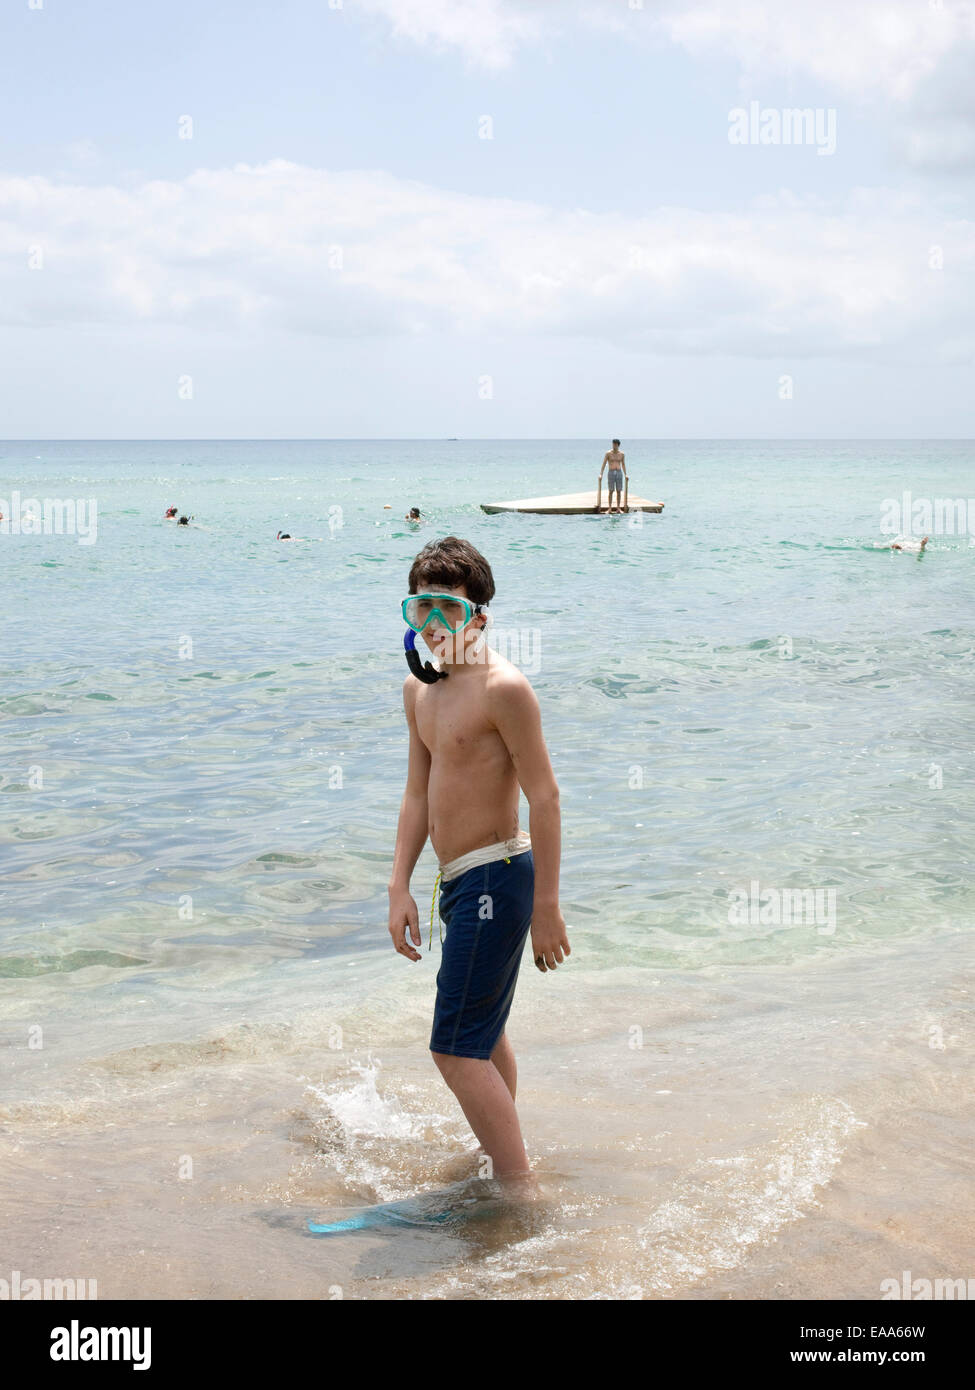 Teen boy in snorkel gear by water Stock Photo